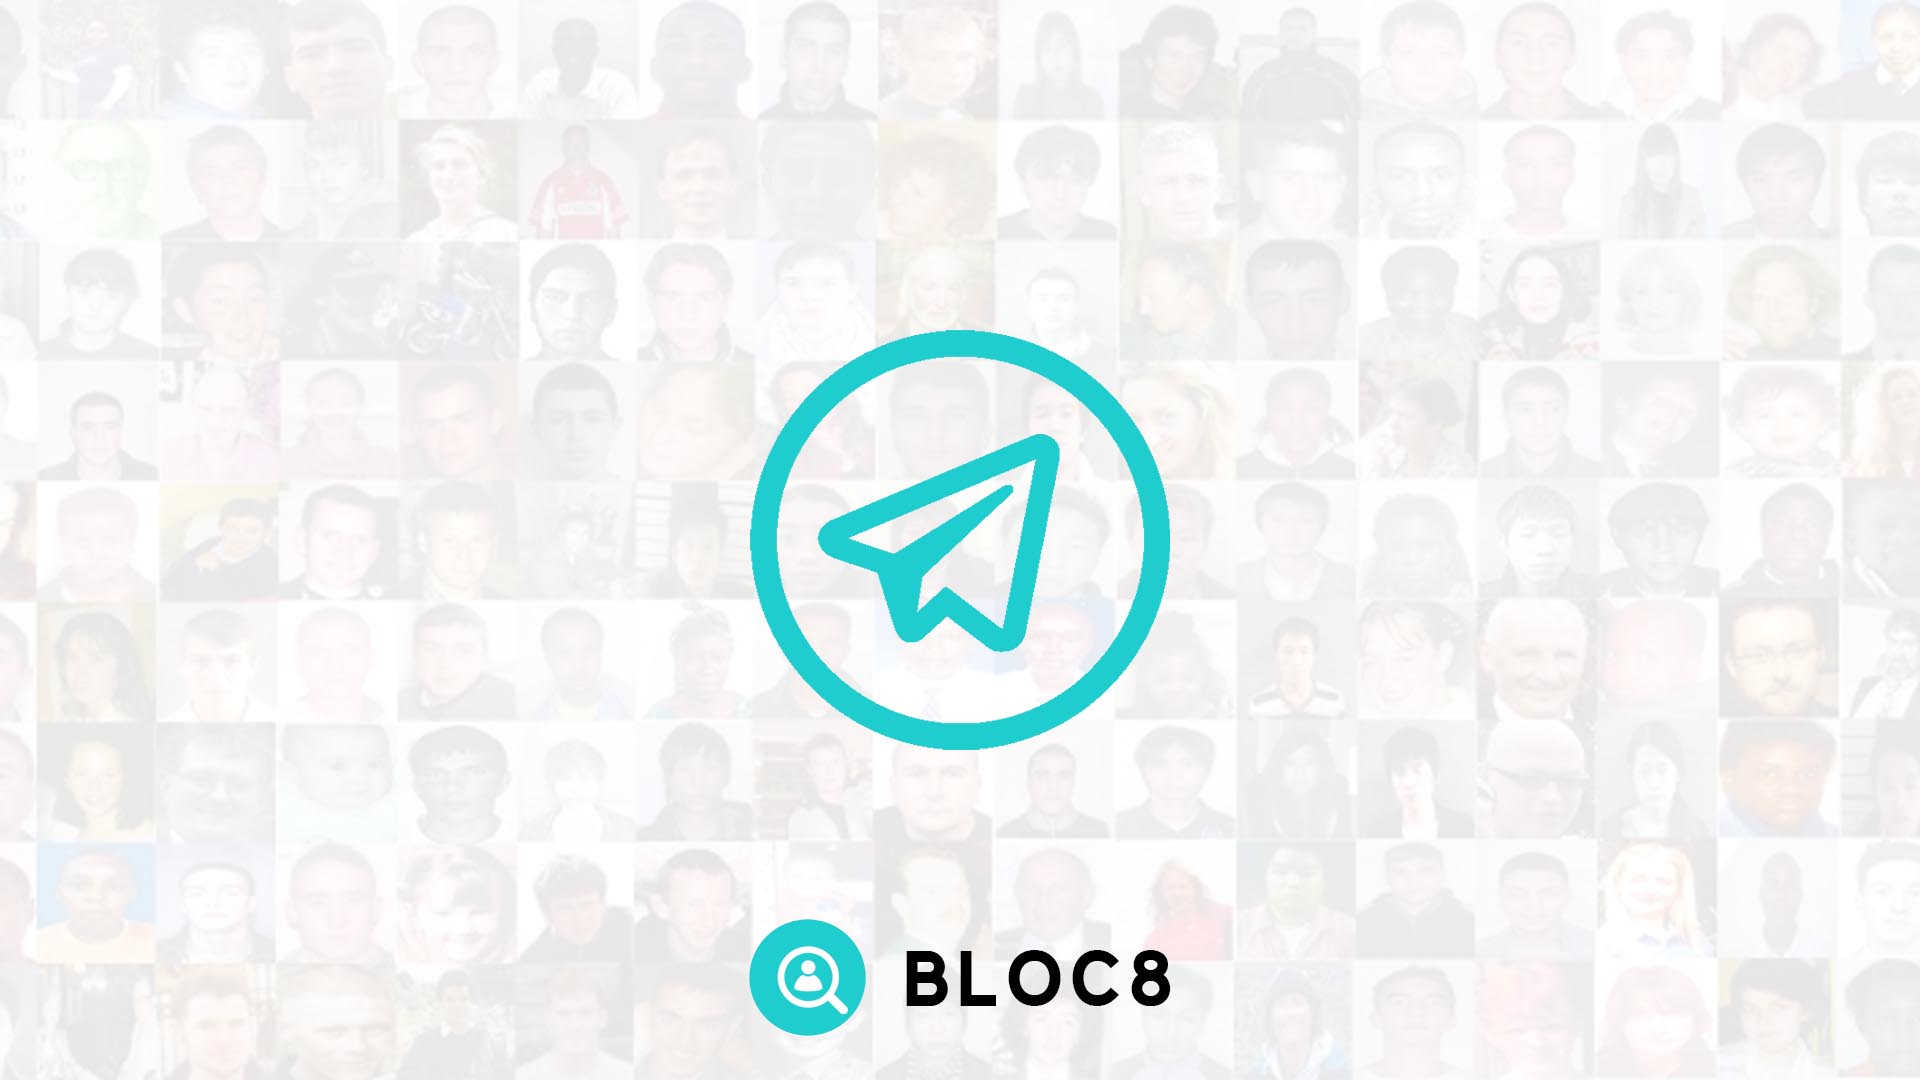 BLOC8 Telegram News